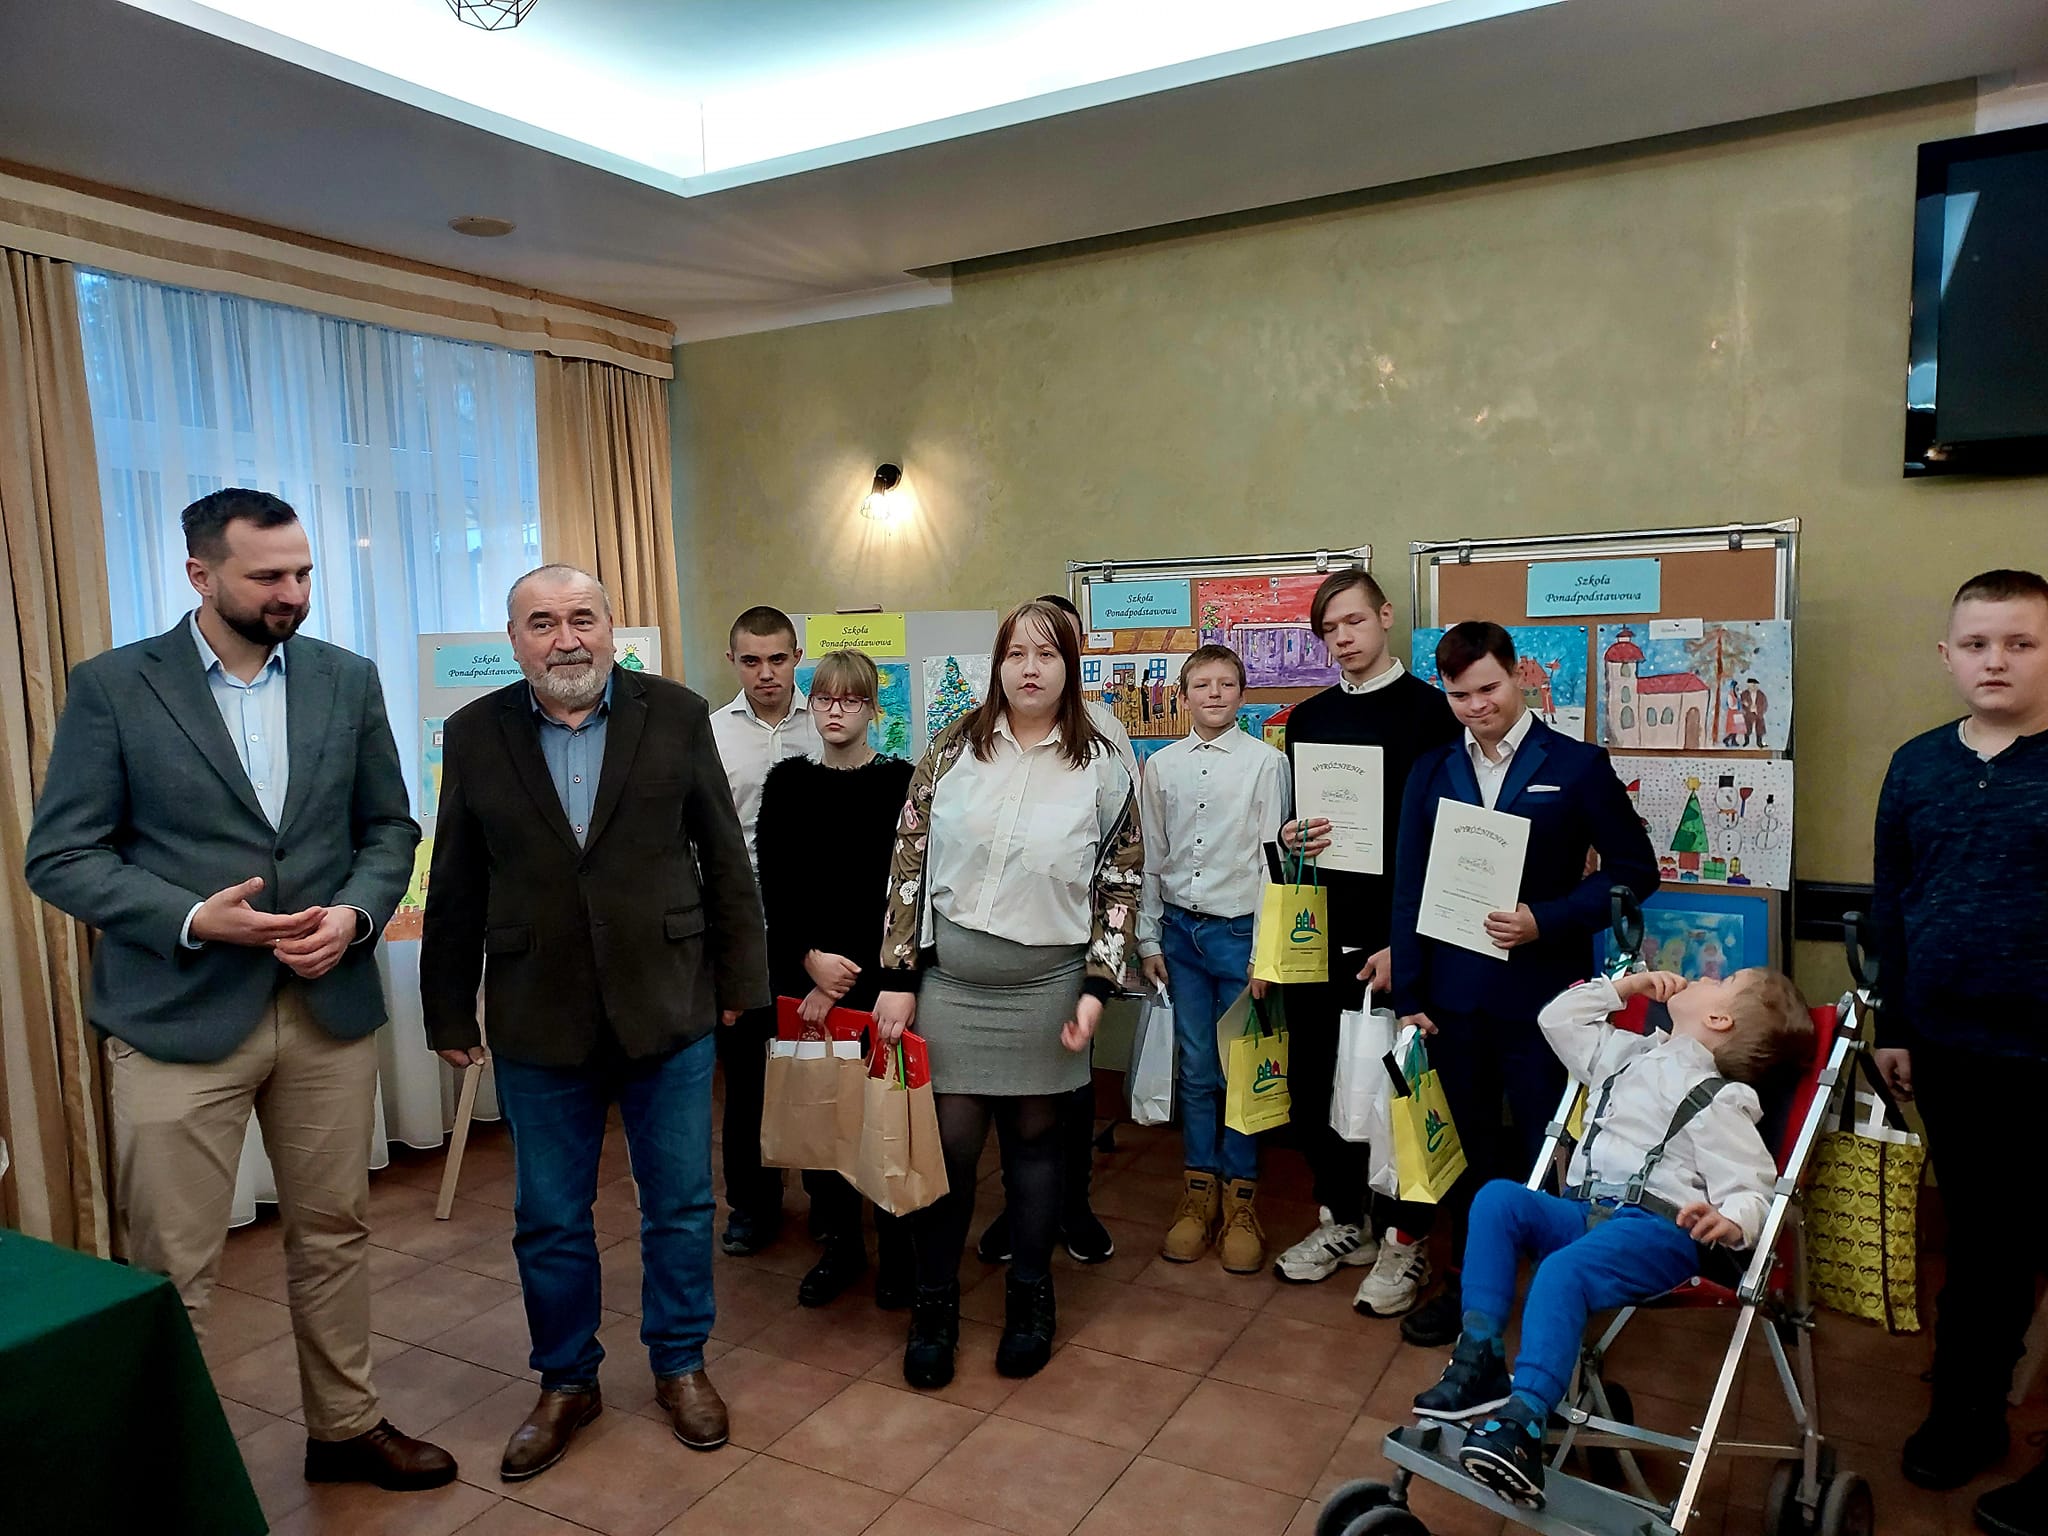   Kinder aus der K. Makuszyński-Förderschule und dem Bildungszentrum in Olsztyn mit ihren Preisen für die prämierten Kunstwerke des Kunstwettbewerbs 